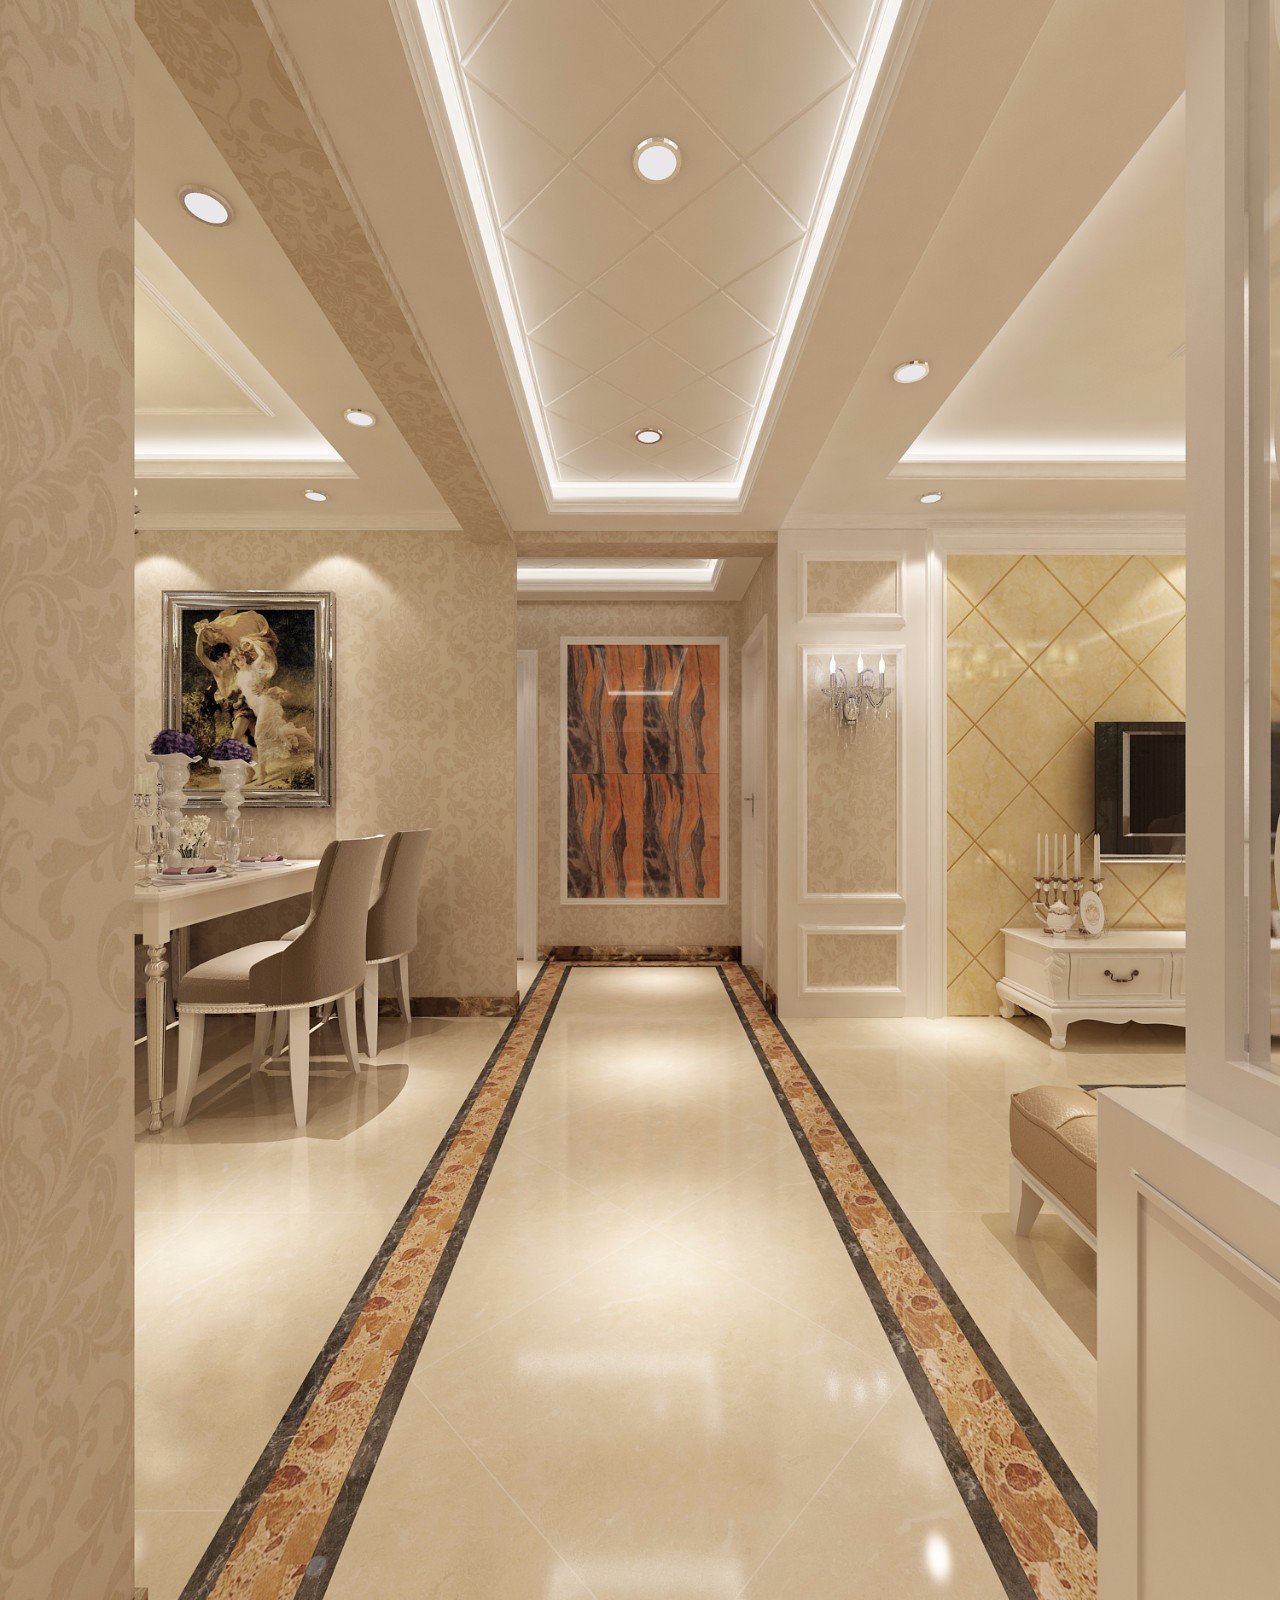 歐式輕奢風格室內設計家裝案例-走廊